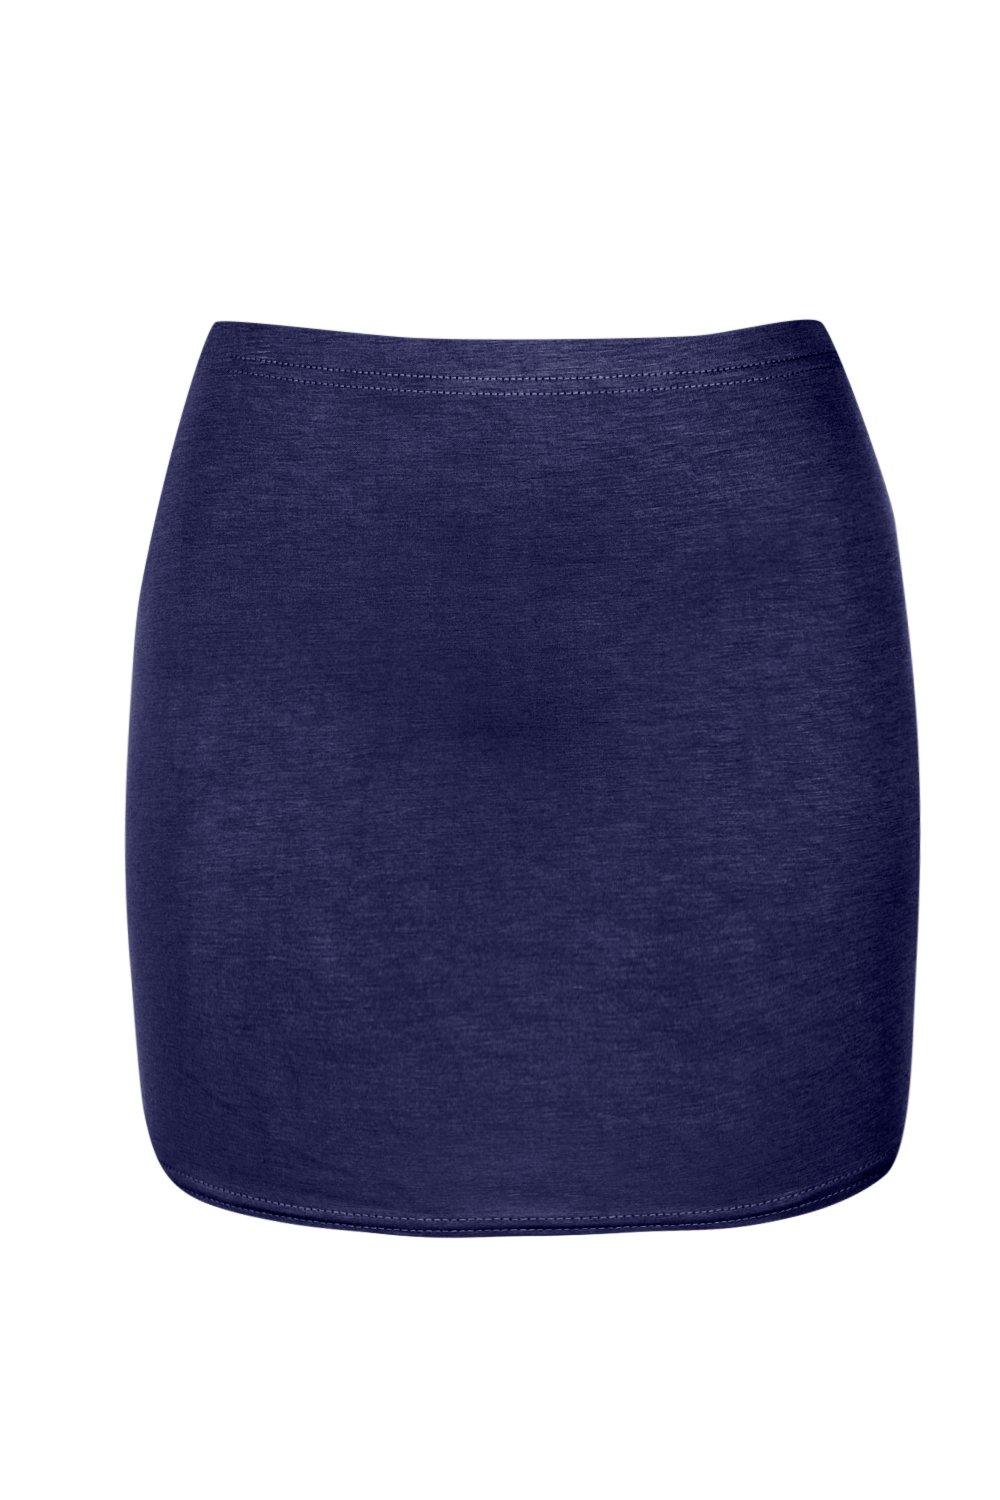 Boohoo Womens Maisy Bodycon Mini Skirt | eBay